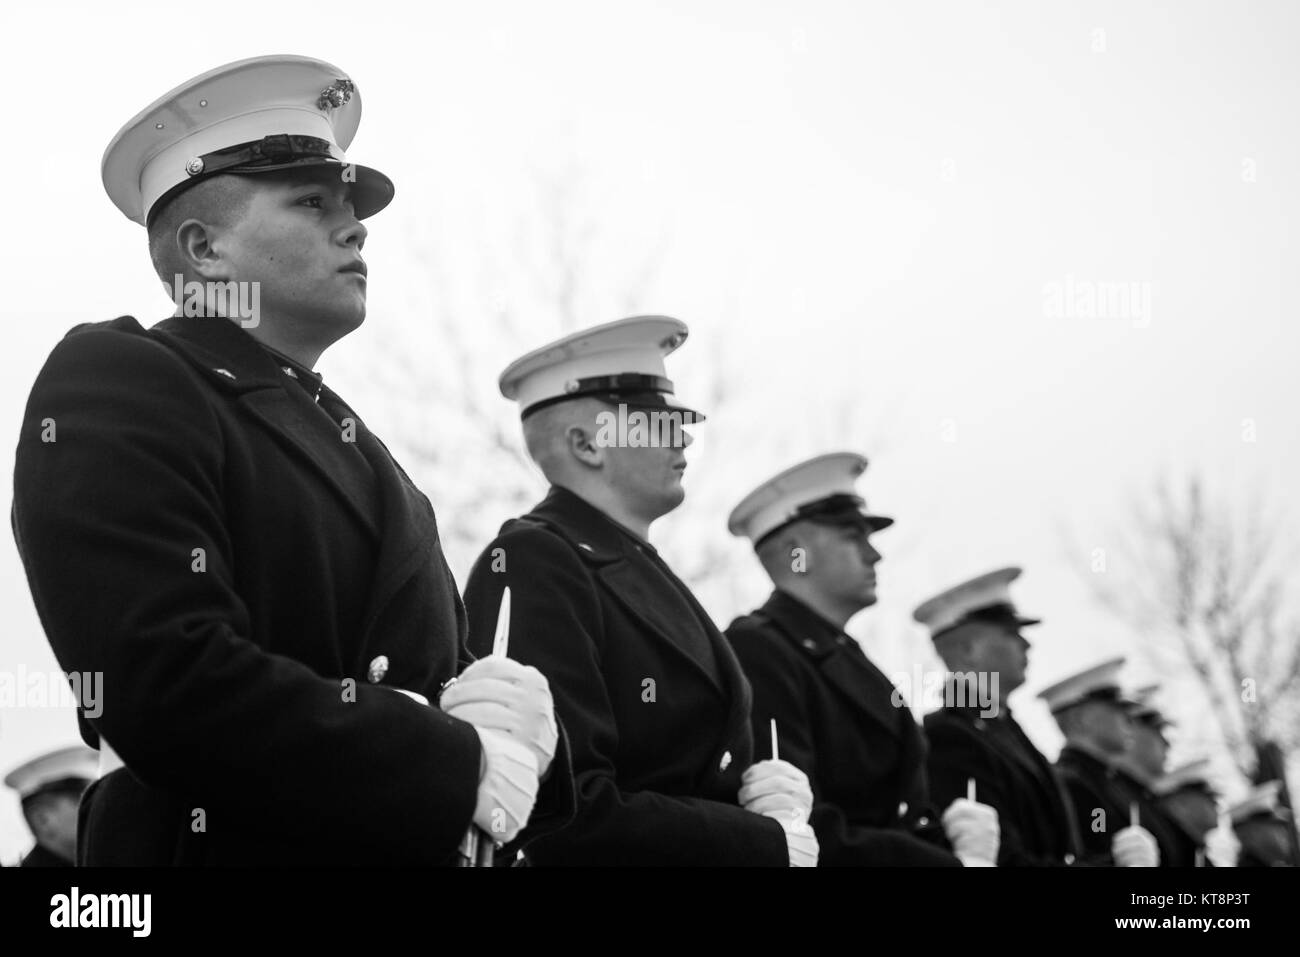 Los infantes de marina de las barracas de la Infantería de Marina, Washington, D.C. (8 y 1), la banda de Marina de los Estados Unidos, "El presidente del propio", y el Regimiento de Infantería US 3D (Vieja Guardia) Pelotón casetones participar en todos los honores funeral del Cuerpo de Marines de EE.UU. Pvt. Archie Newell en la sección 60 del Cementerio Nacional de Arlington, Arlington, Virginia, 8 de diciembre, 2017. Asignado a la compañía C, 2º Batallón de Tanques, 2ª División de Infantería de Marina en 1943, Newell, murió cuando su división intentó asegurar la pequeña isla de Betio, en el atolón de Tarawa del japonés. Aunque la batalla duró varios días, Newell murió en el primer día de batalla Foto de stock